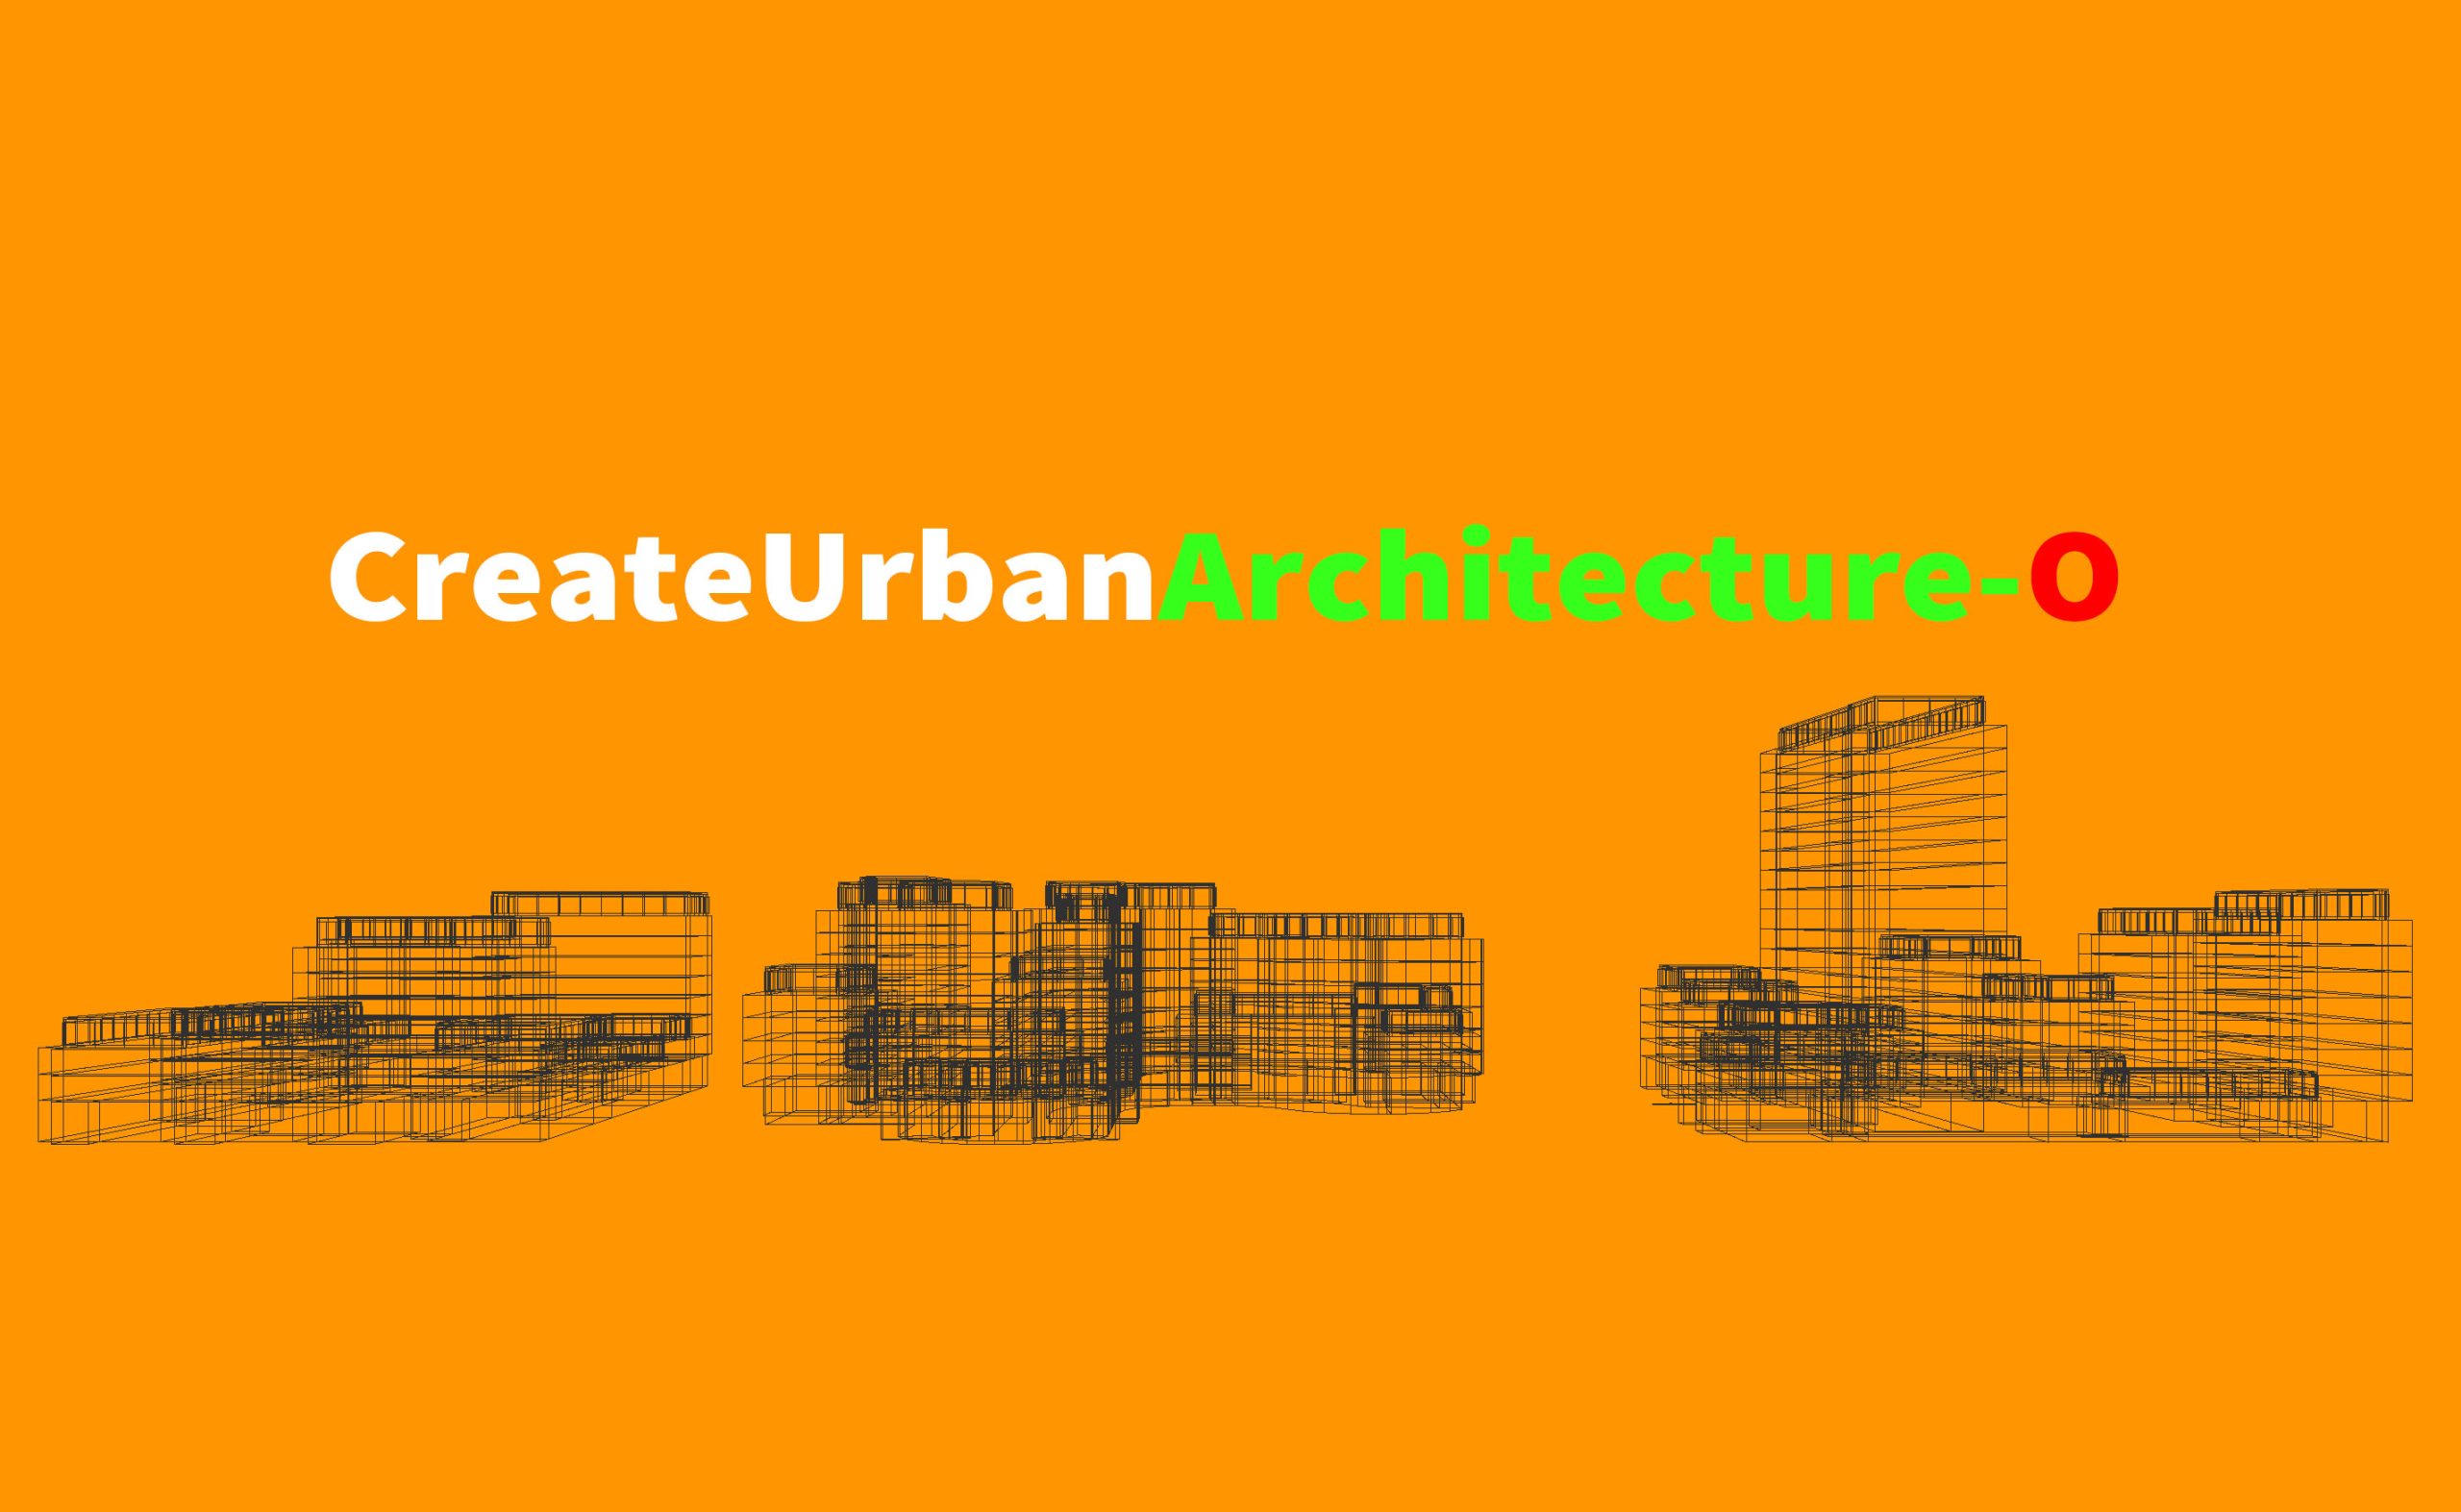 城市一般建筑程序生成工具o版-ArcGIS CityEngine中文网社区